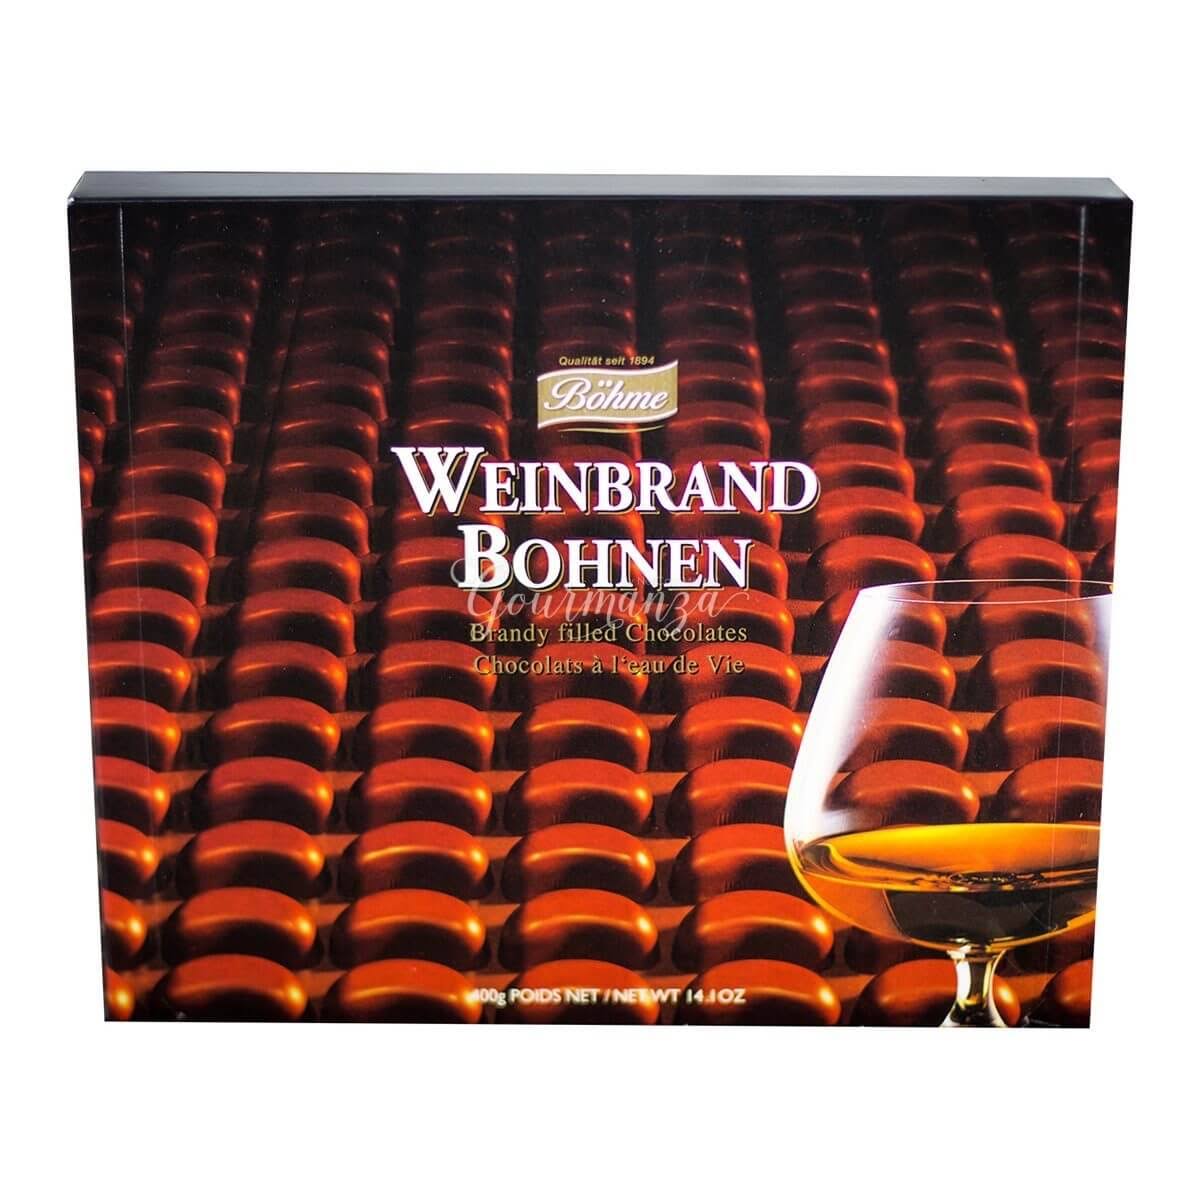 Weinbrand Bohnen Brandy Filled Chocolates - 14.1oz